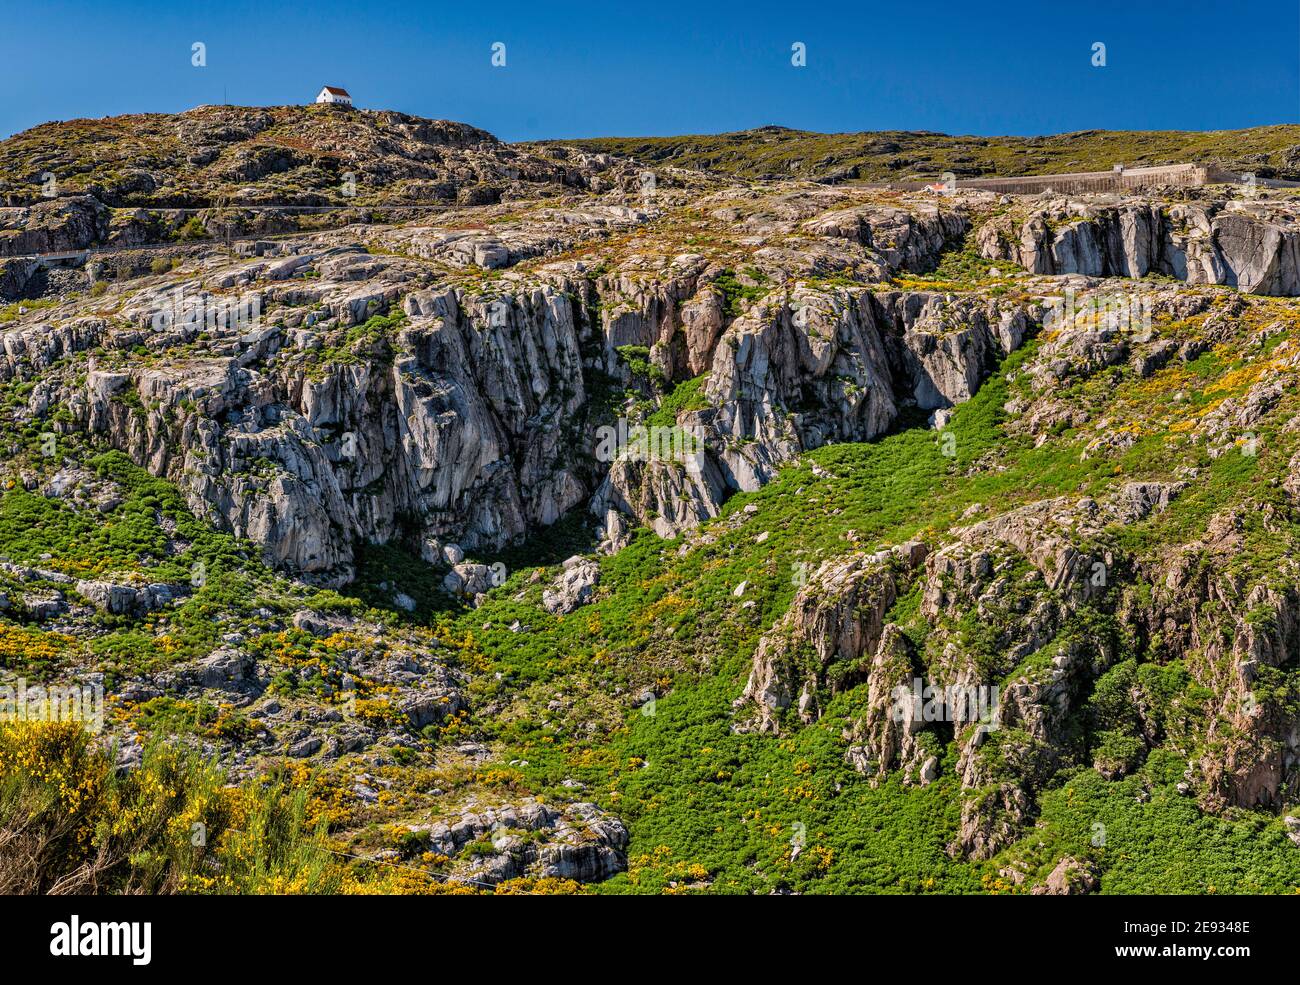 Ghiacciai, rocce di granito esposte da erosione glaciale, sul bacino idrico di Covao do Corral, capanna in lontananza, Parco Naturale Serra da Estrela, Portogallo Foto Stock